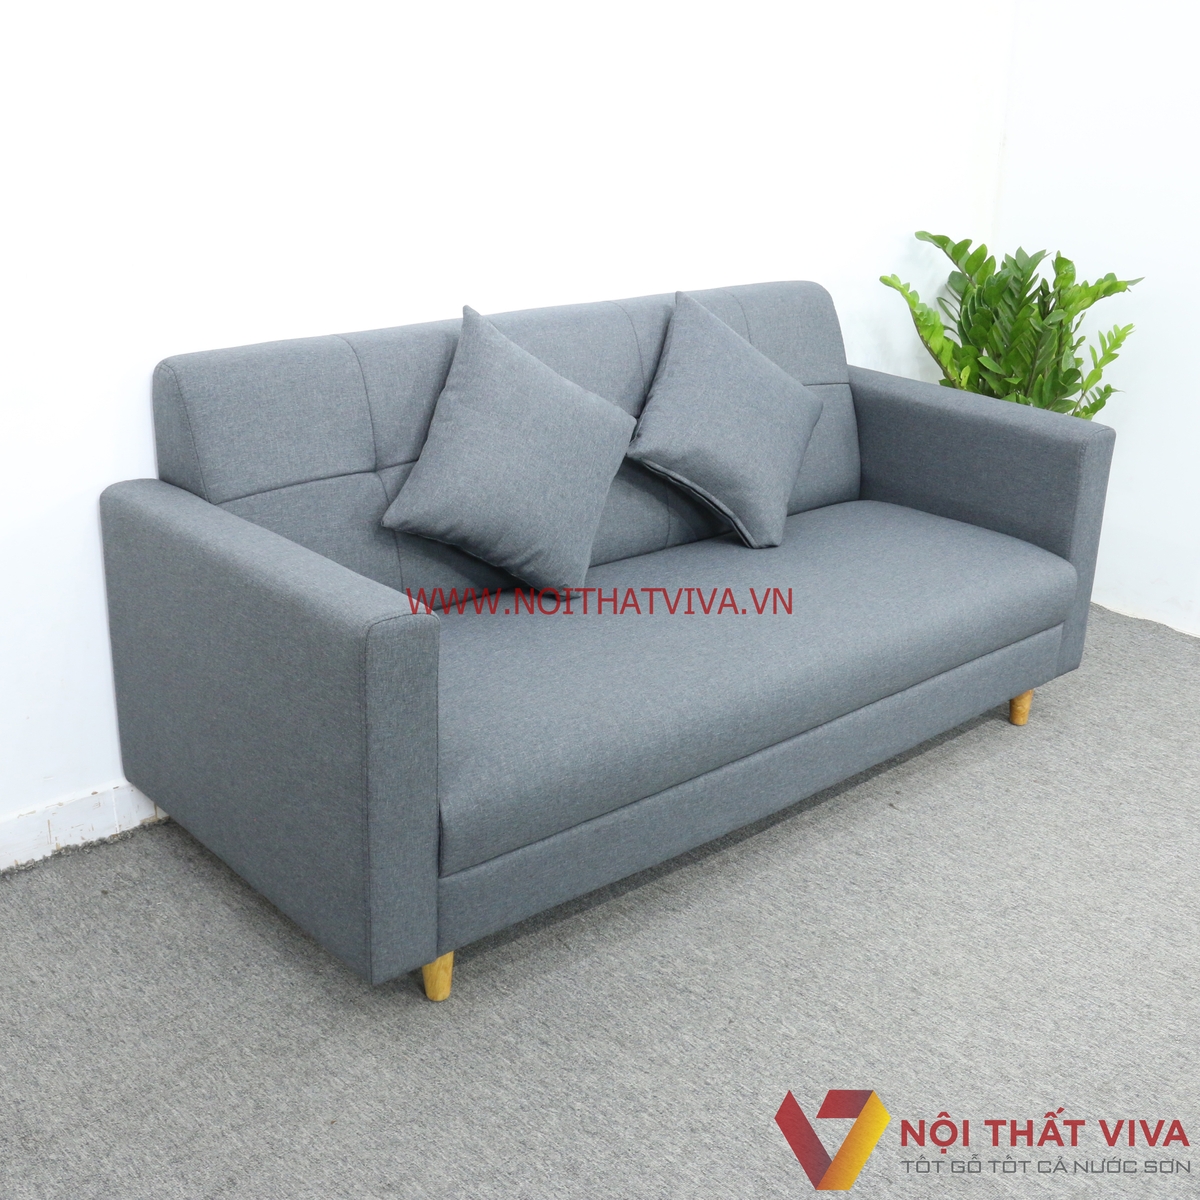 Bộ Bàn Ghế Sofa Mini Nệm Bọc Nỉ Màu Xám 6 Món Gọn Đẹp Hiện Đại